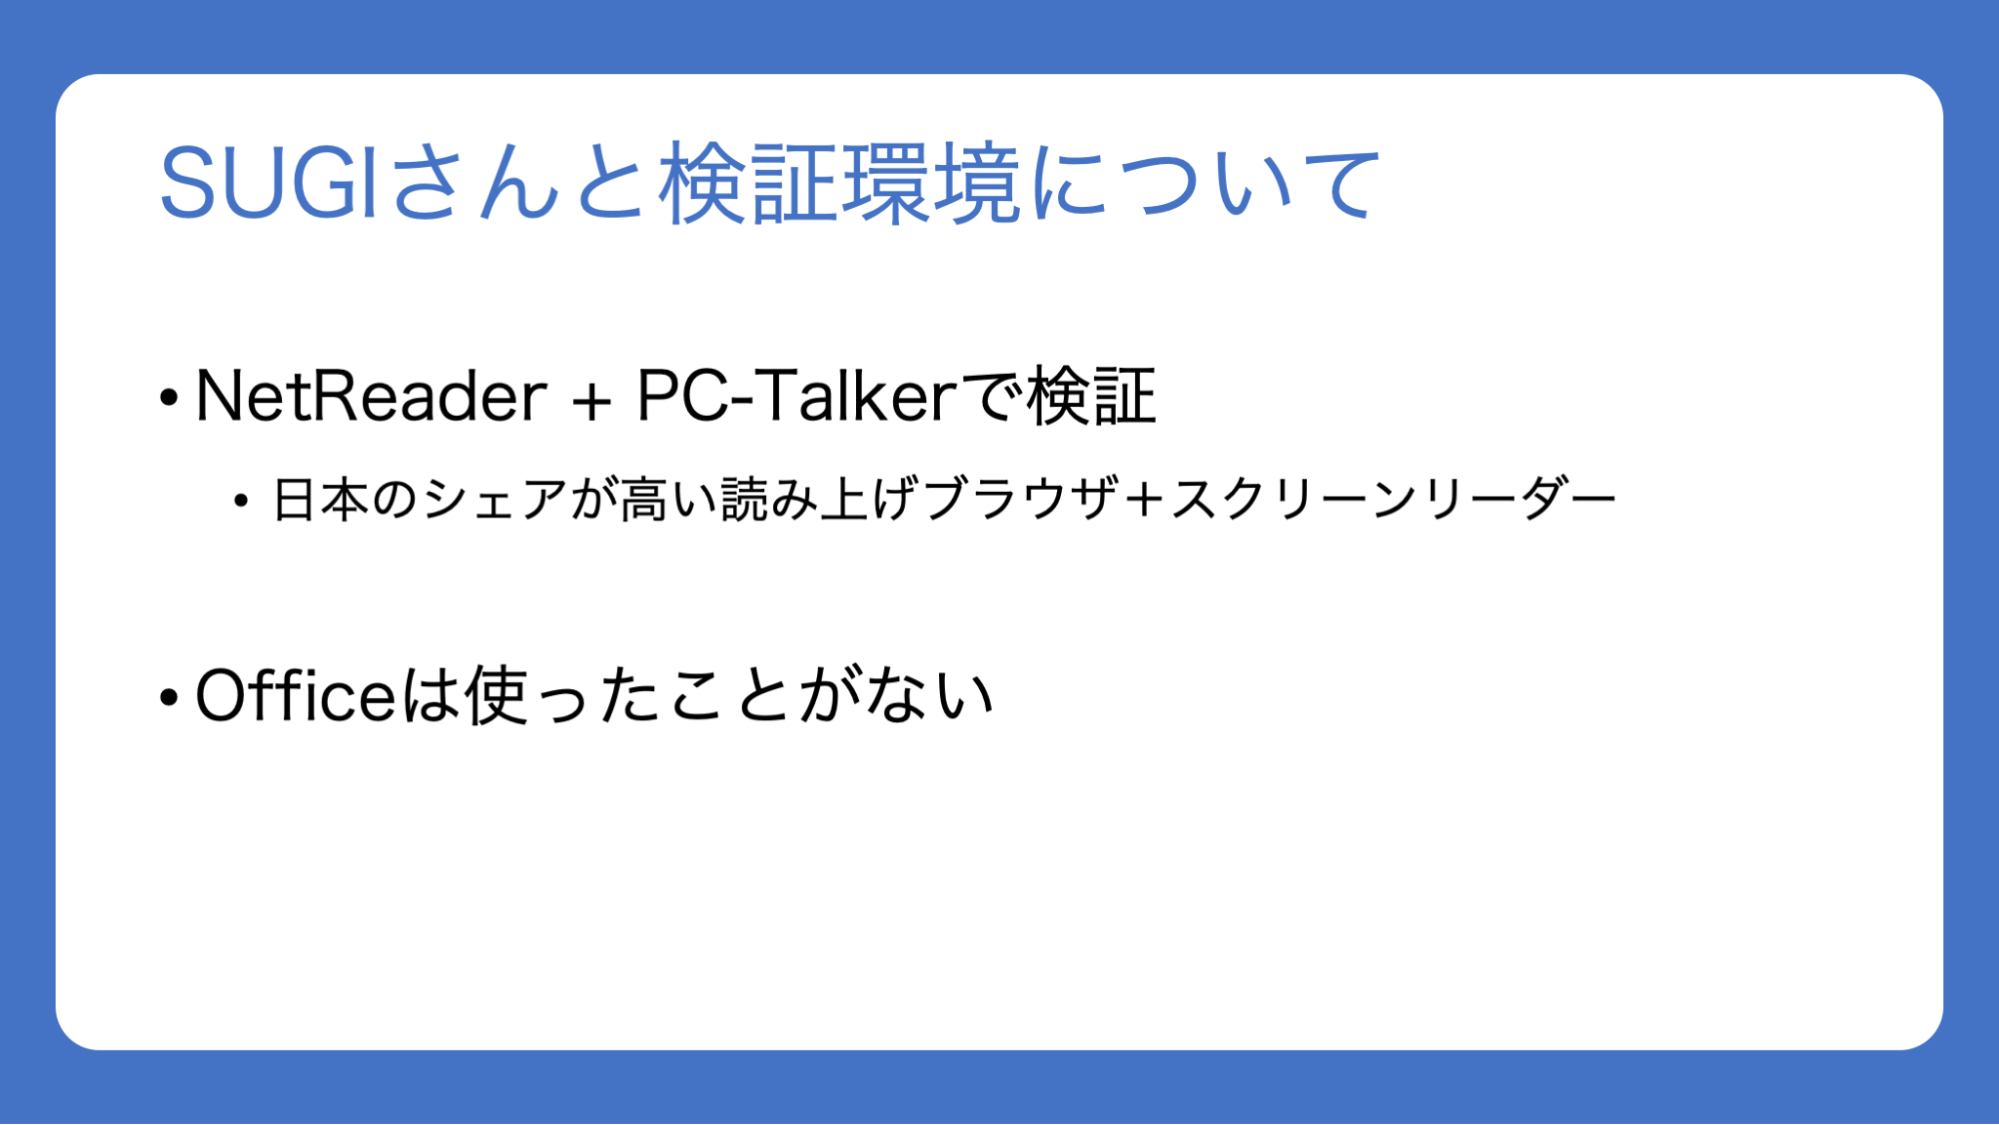 スライド：「SUGIさんと検証環境について。NetReader + PC-Talkerで検証。日本のシェアが高い読み上げブラウザ＋スクリーンリーダー。Officeは使ったことがない」と書かれている。